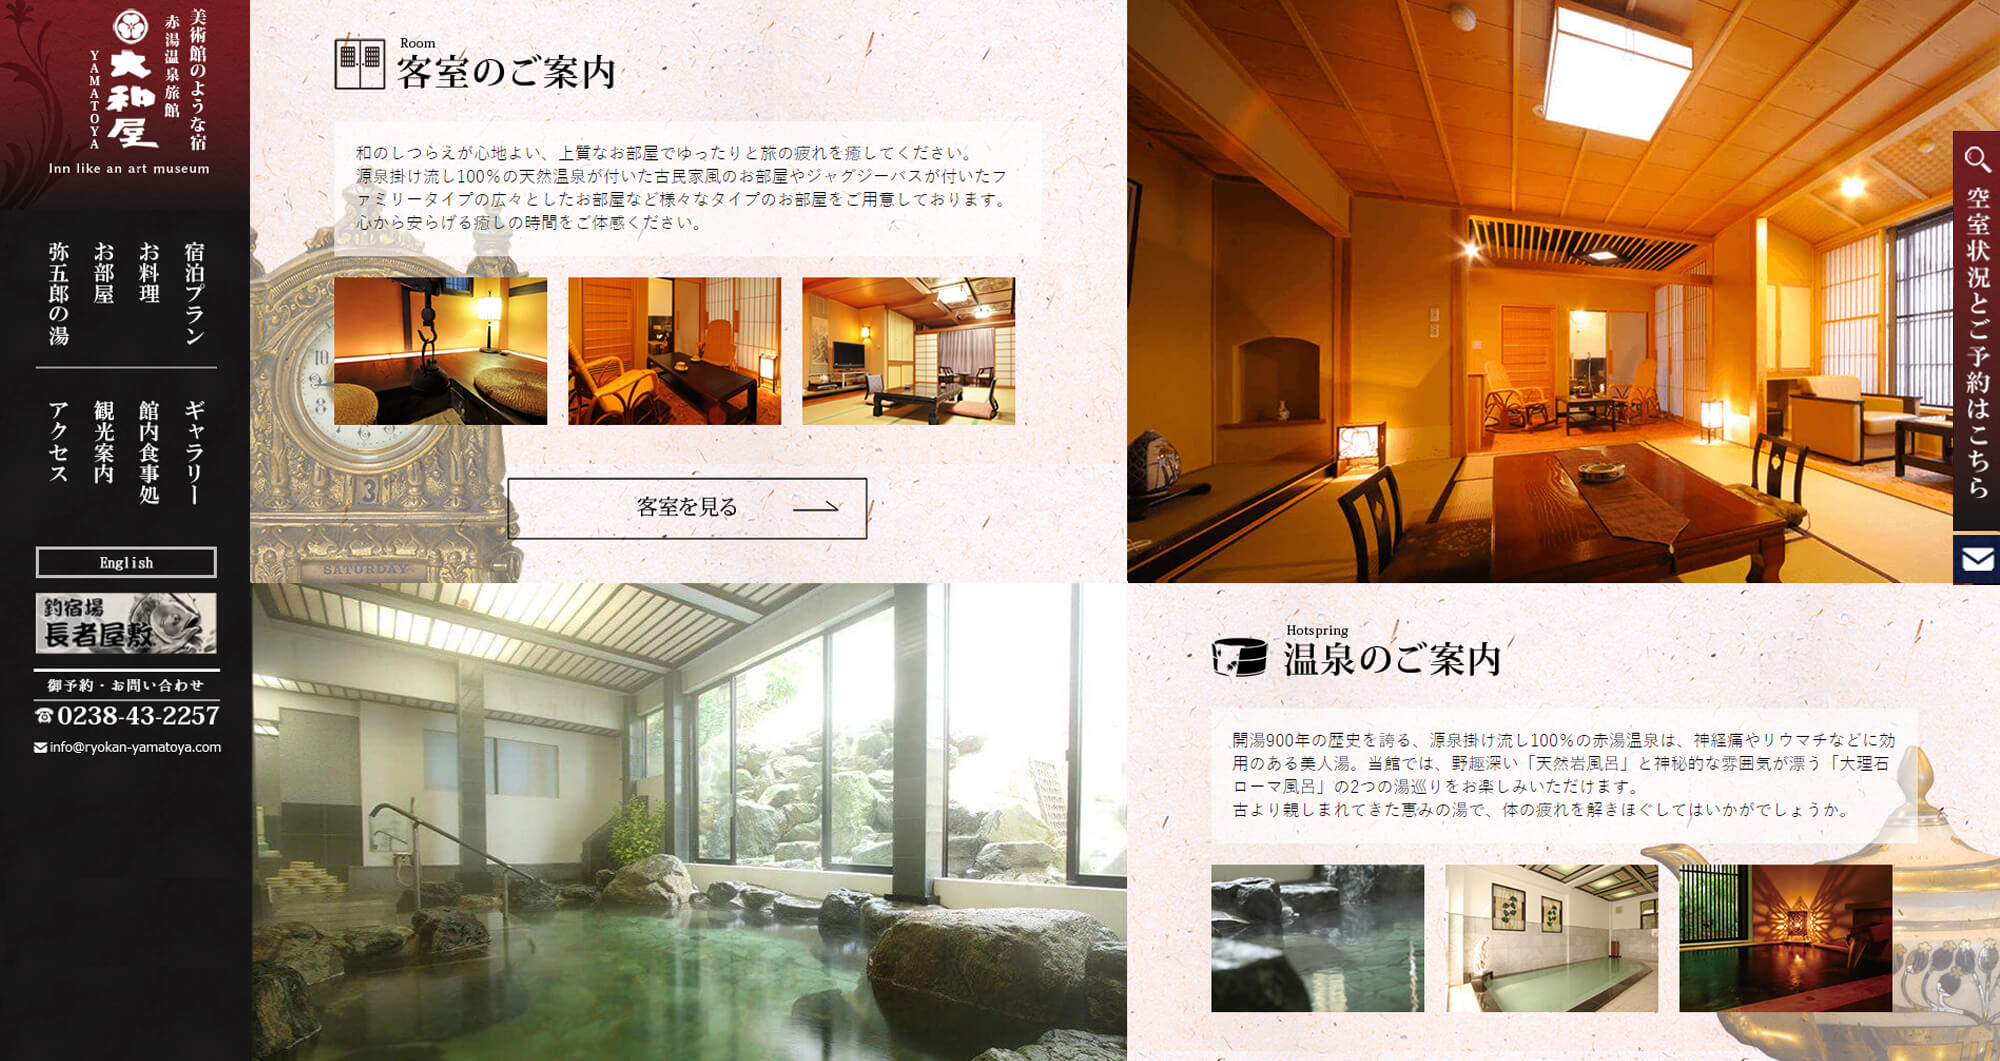 赤湯温泉 旅館大和屋様PCトップページ